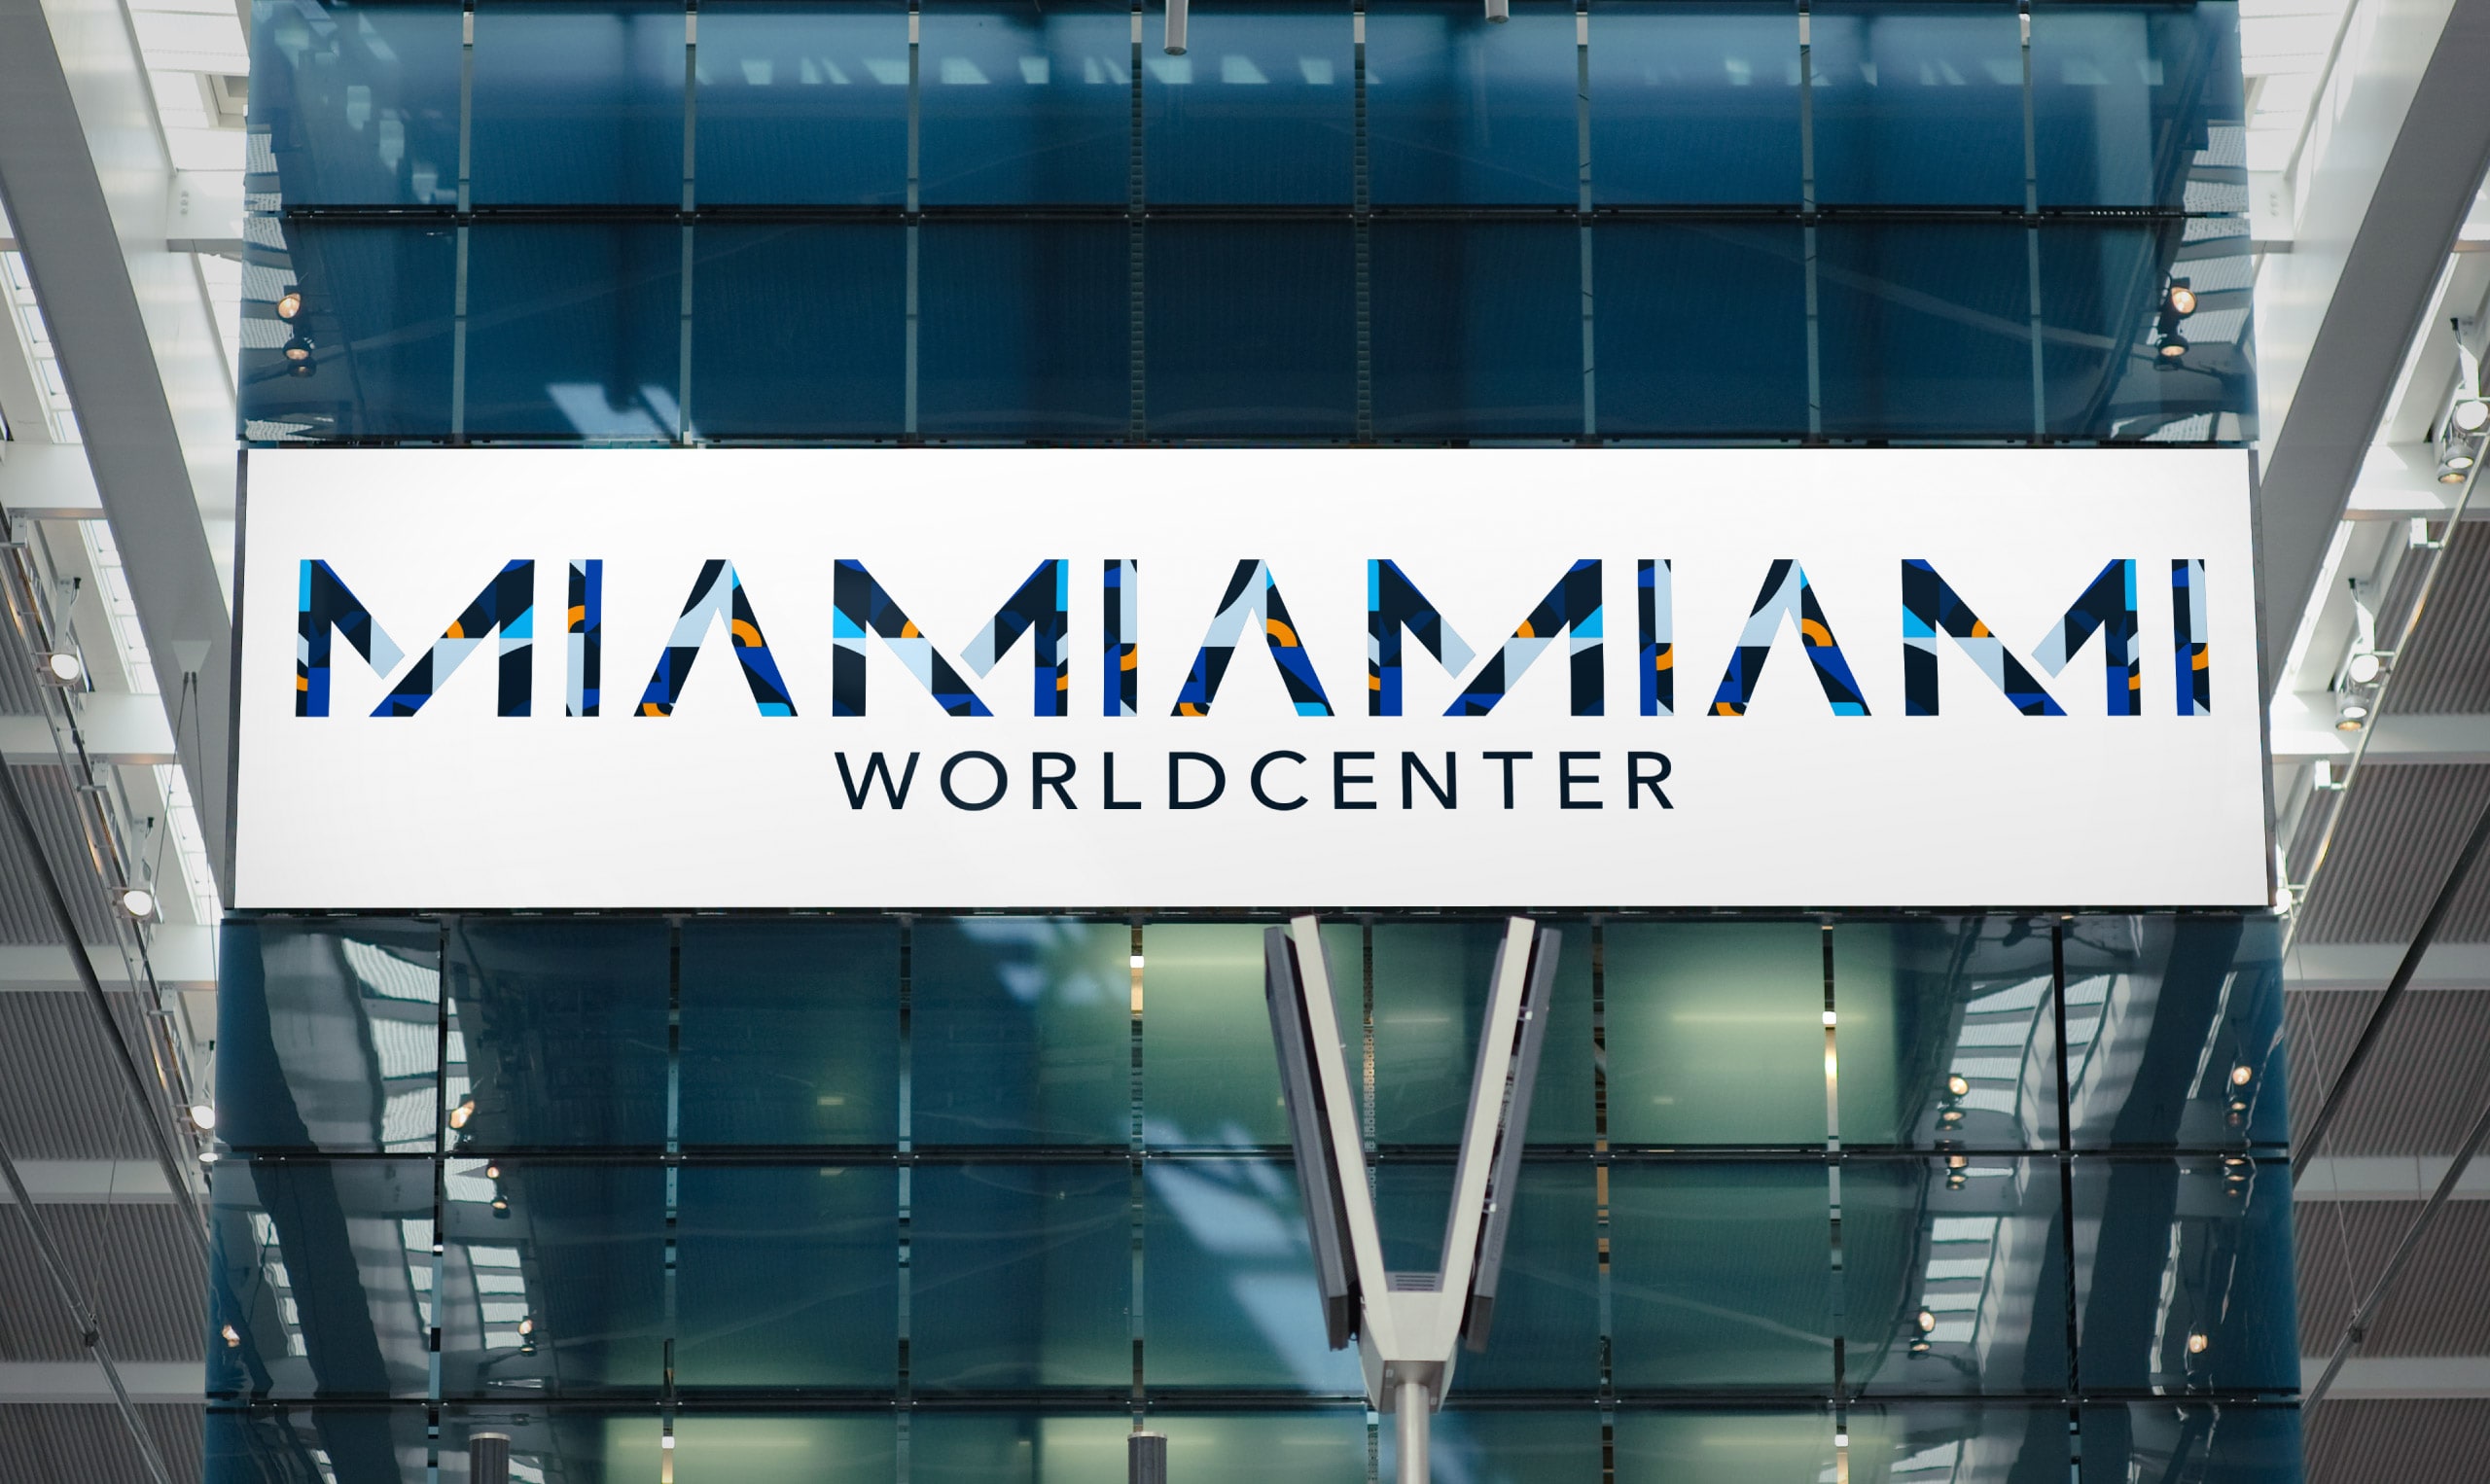 A bold Miami world center logo.